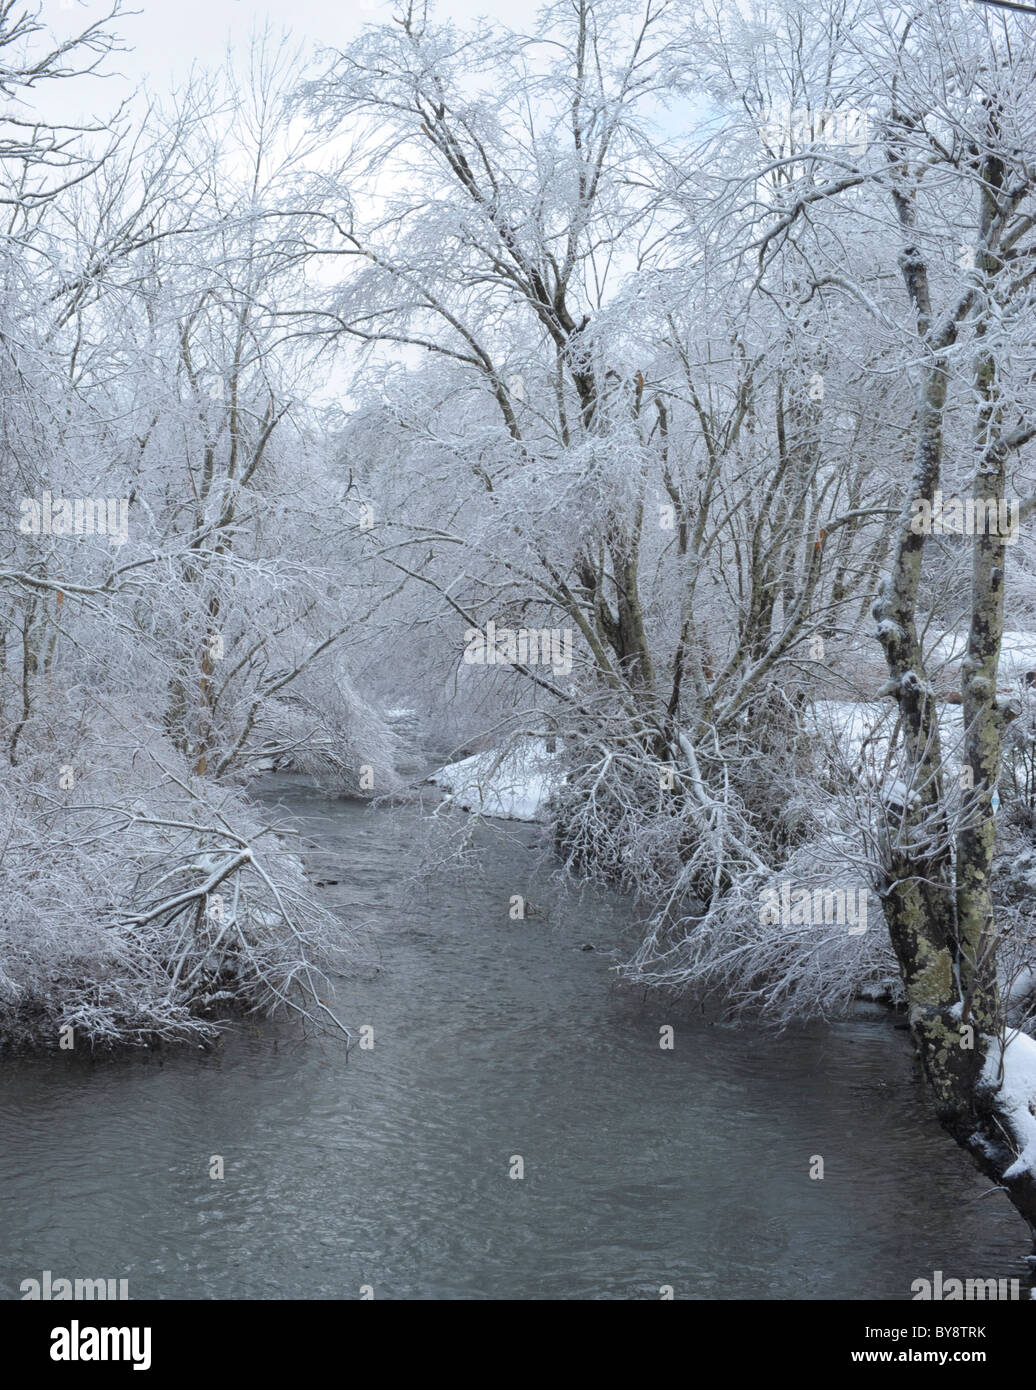 Tablier de la New River, Boone, NC en hiver profonde qui coule à travers une forêt recouverte de glace rime Banque D'Images